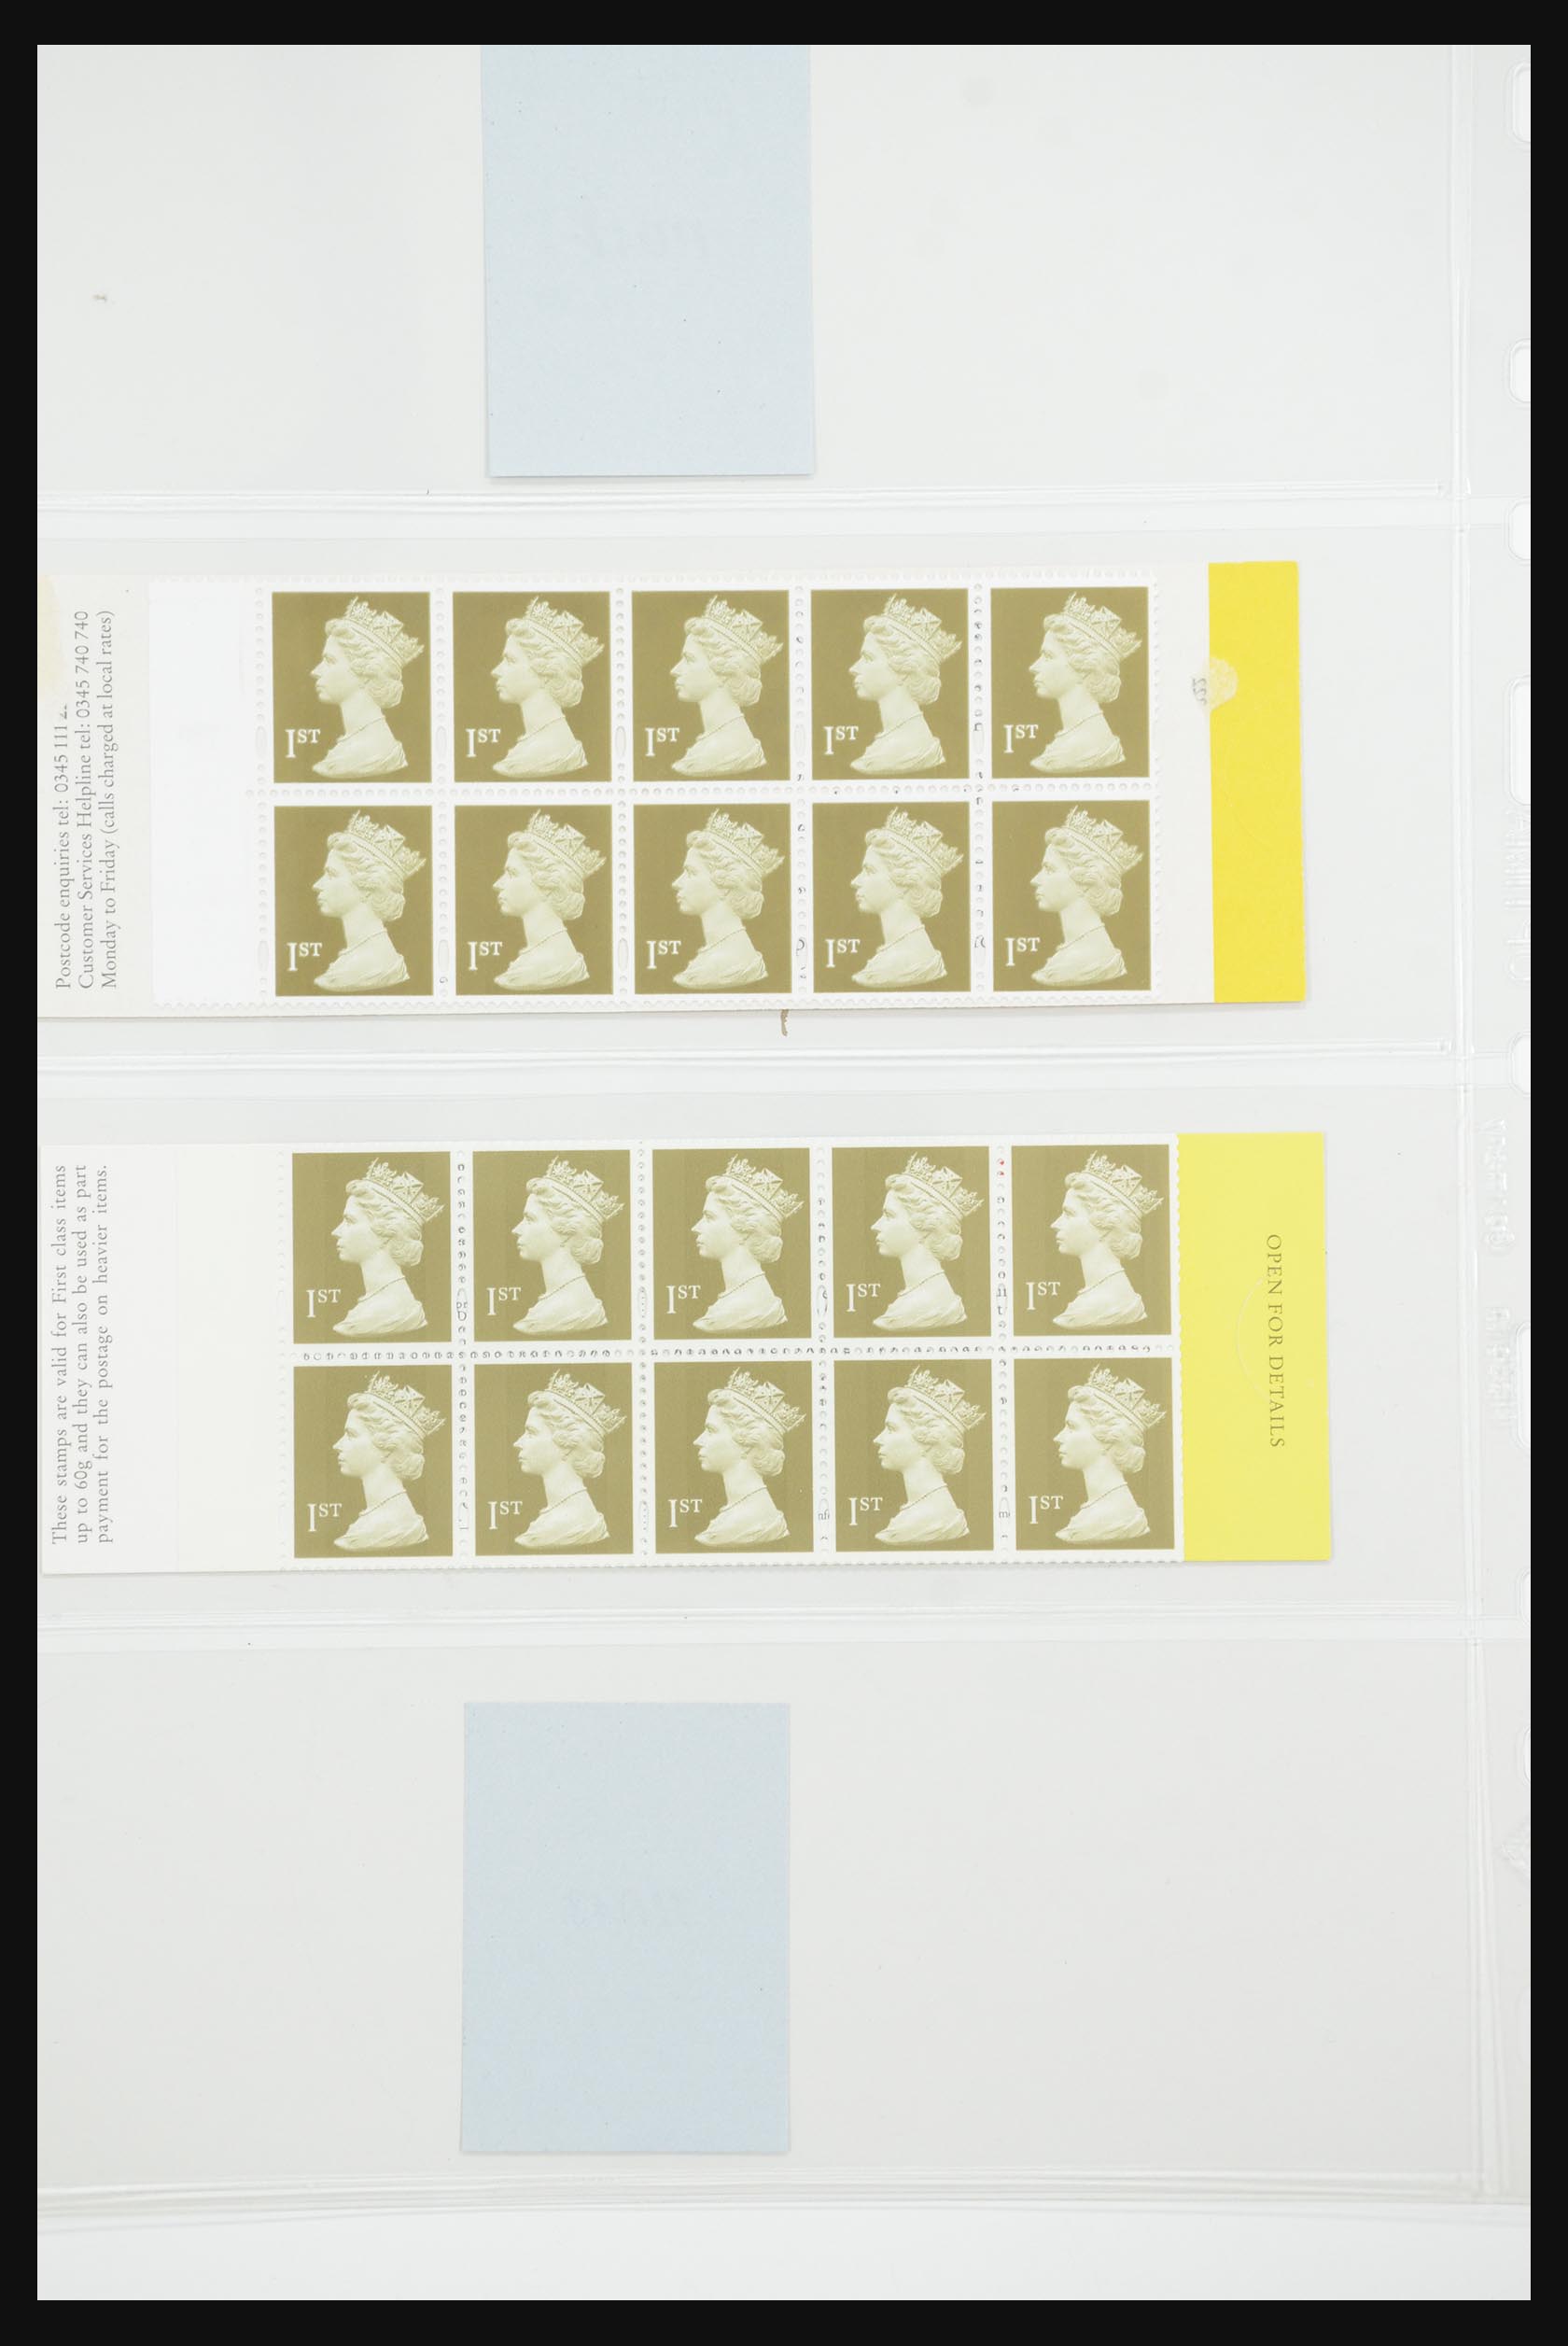 31960 162 - 31960 Engeland postzegelboekjes 1989-2000.